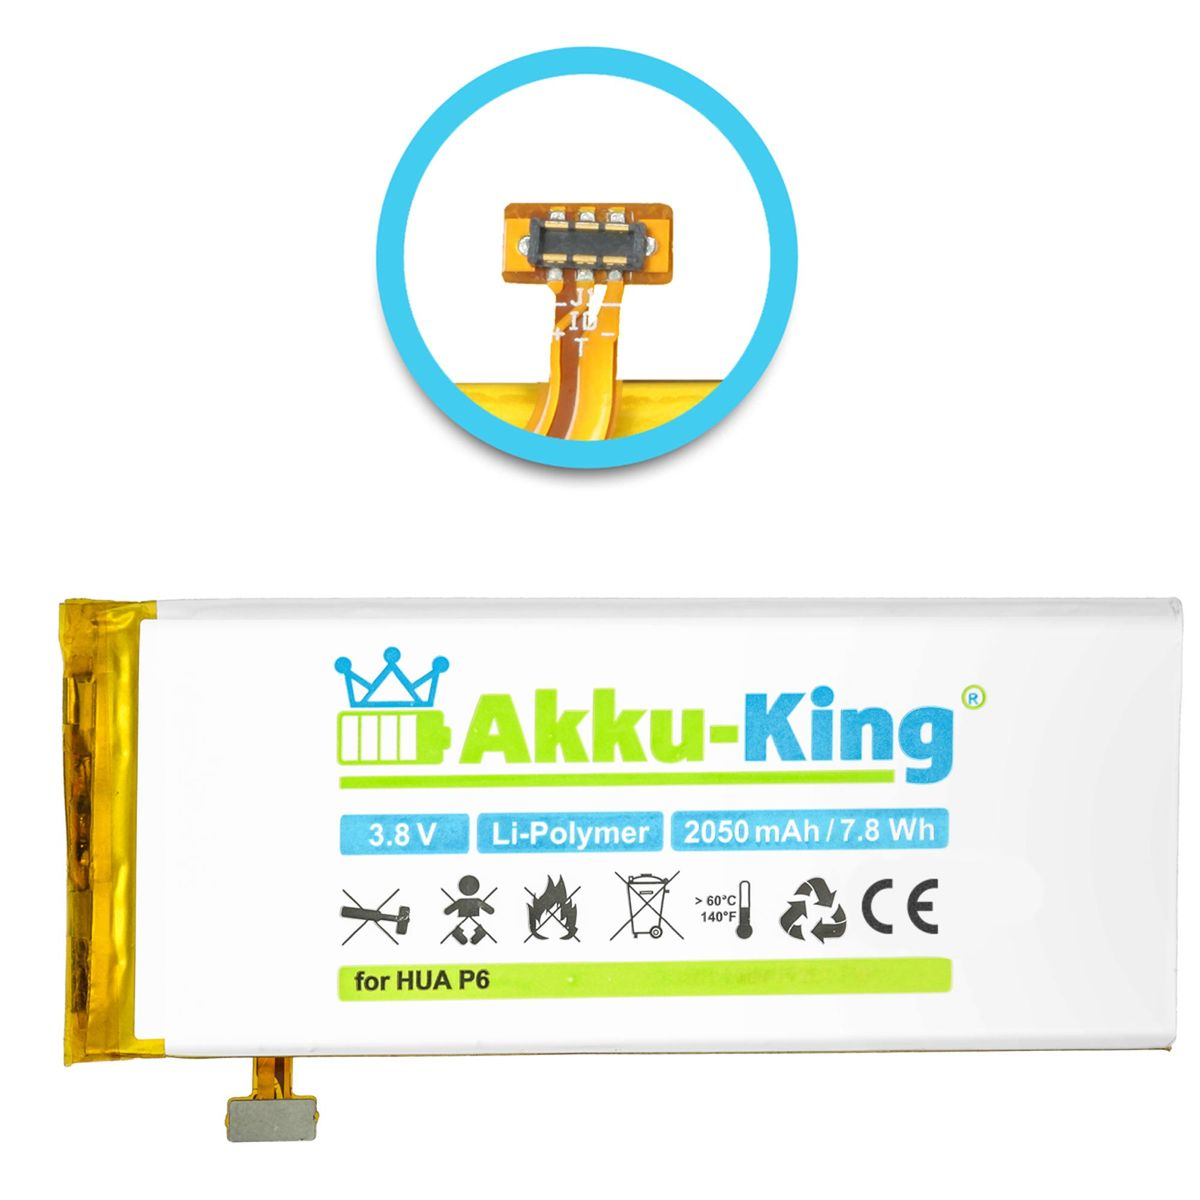 Li-Polymer AKKU-KING 2050mAh mit Akku kompatibel Volt, Huawei HB3742A0E8C 3.8 Handy-Akku,